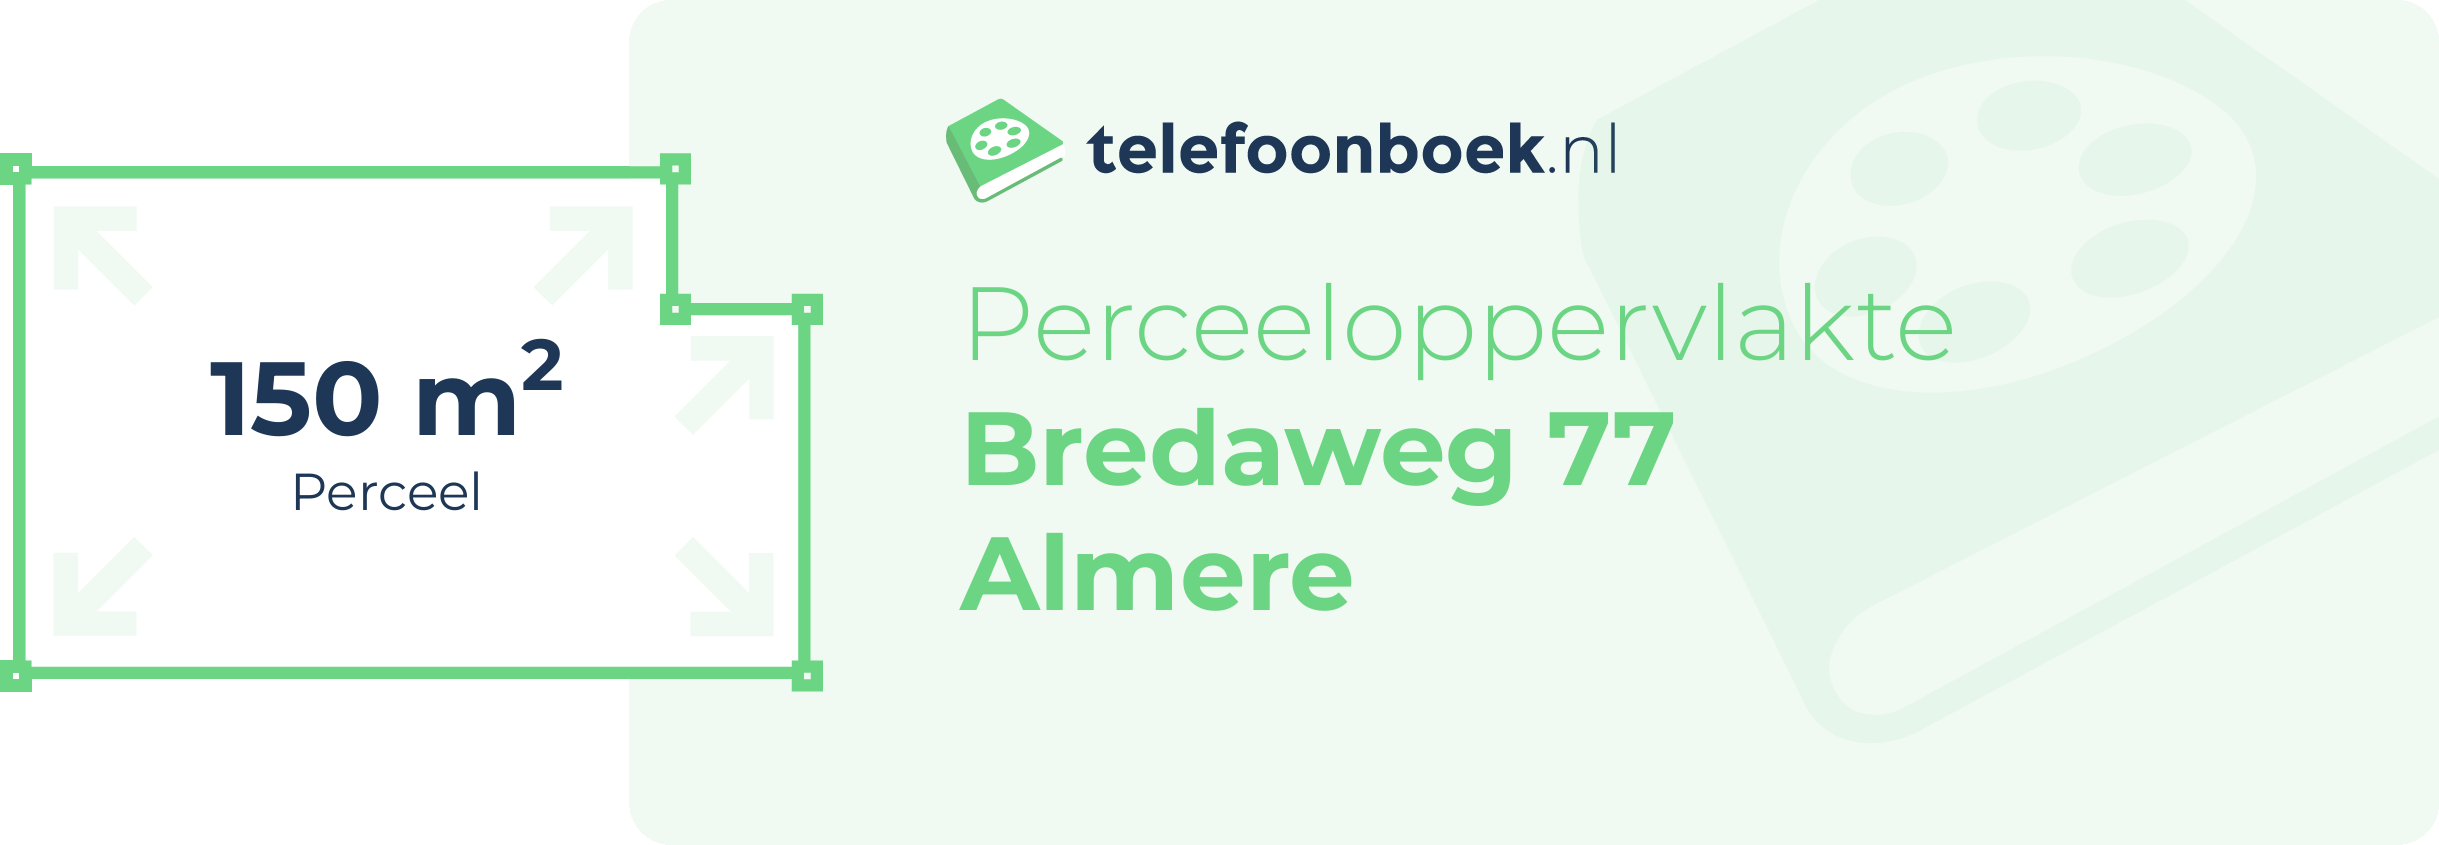 Perceeloppervlakte Bredaweg 77 Almere